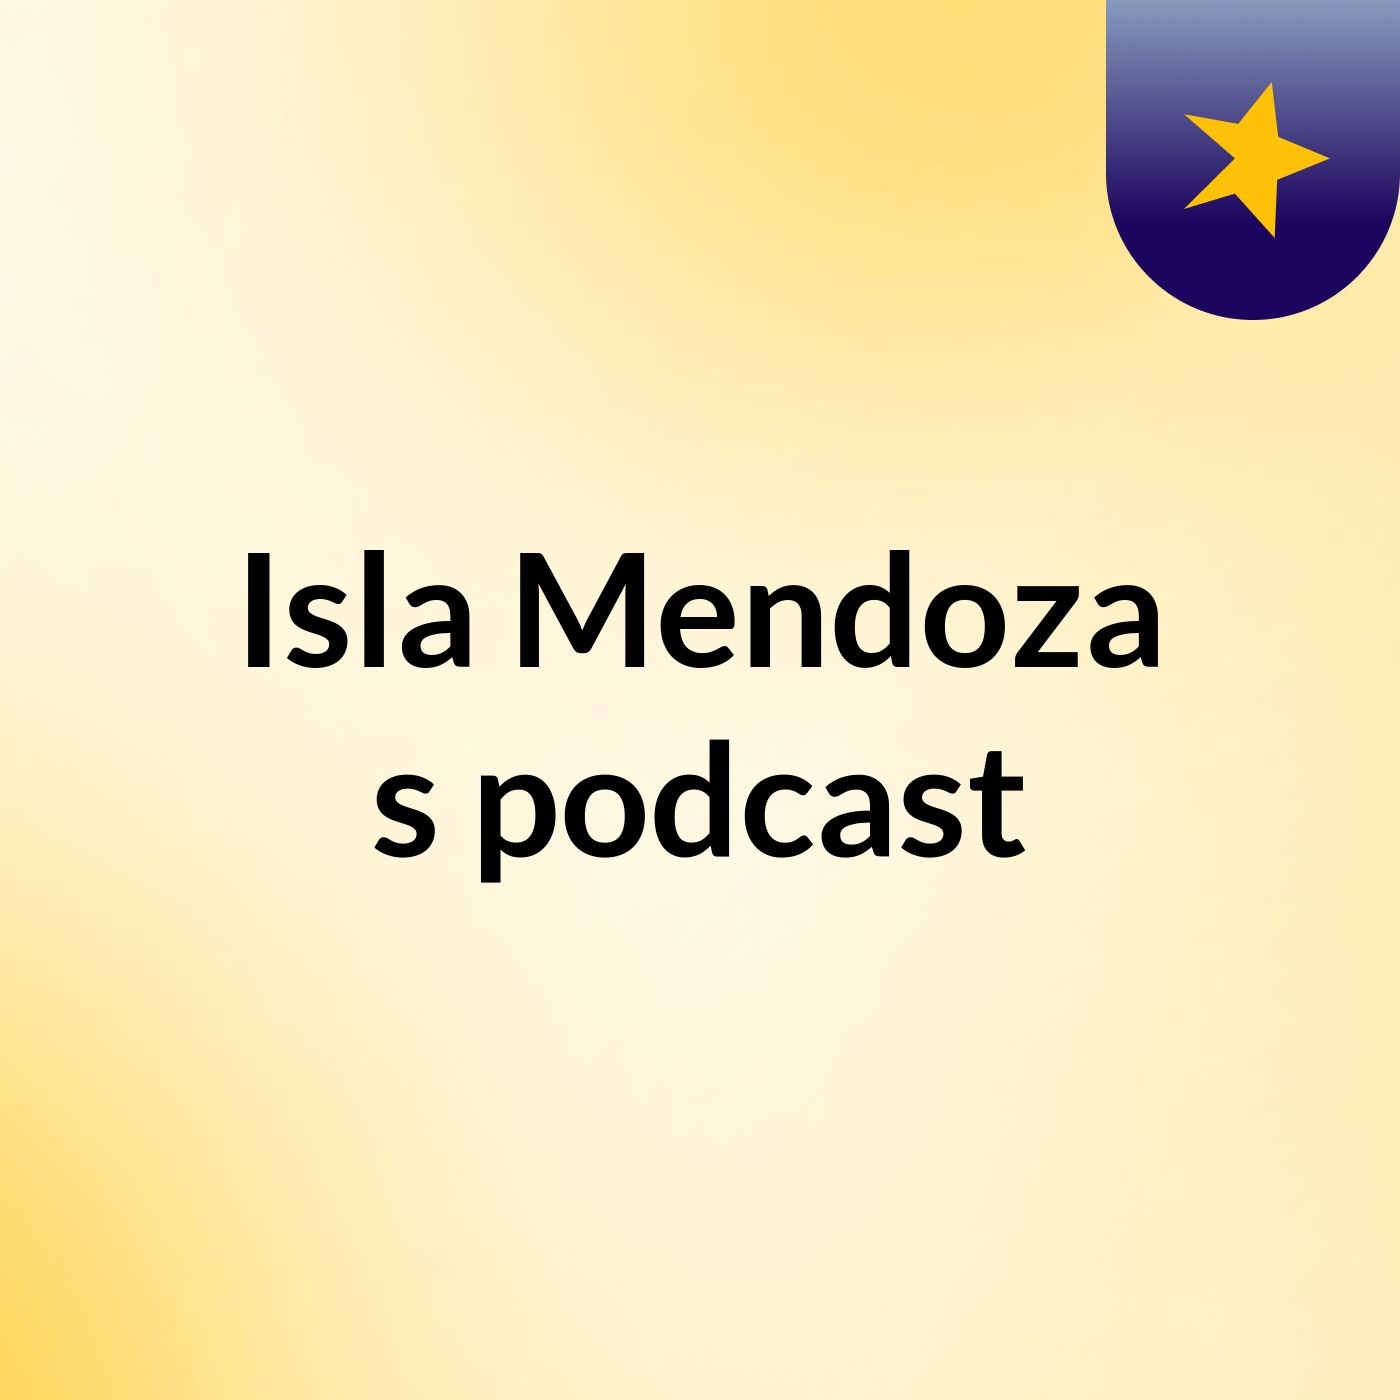 Episode 3 - Isla Mendoza's podcast